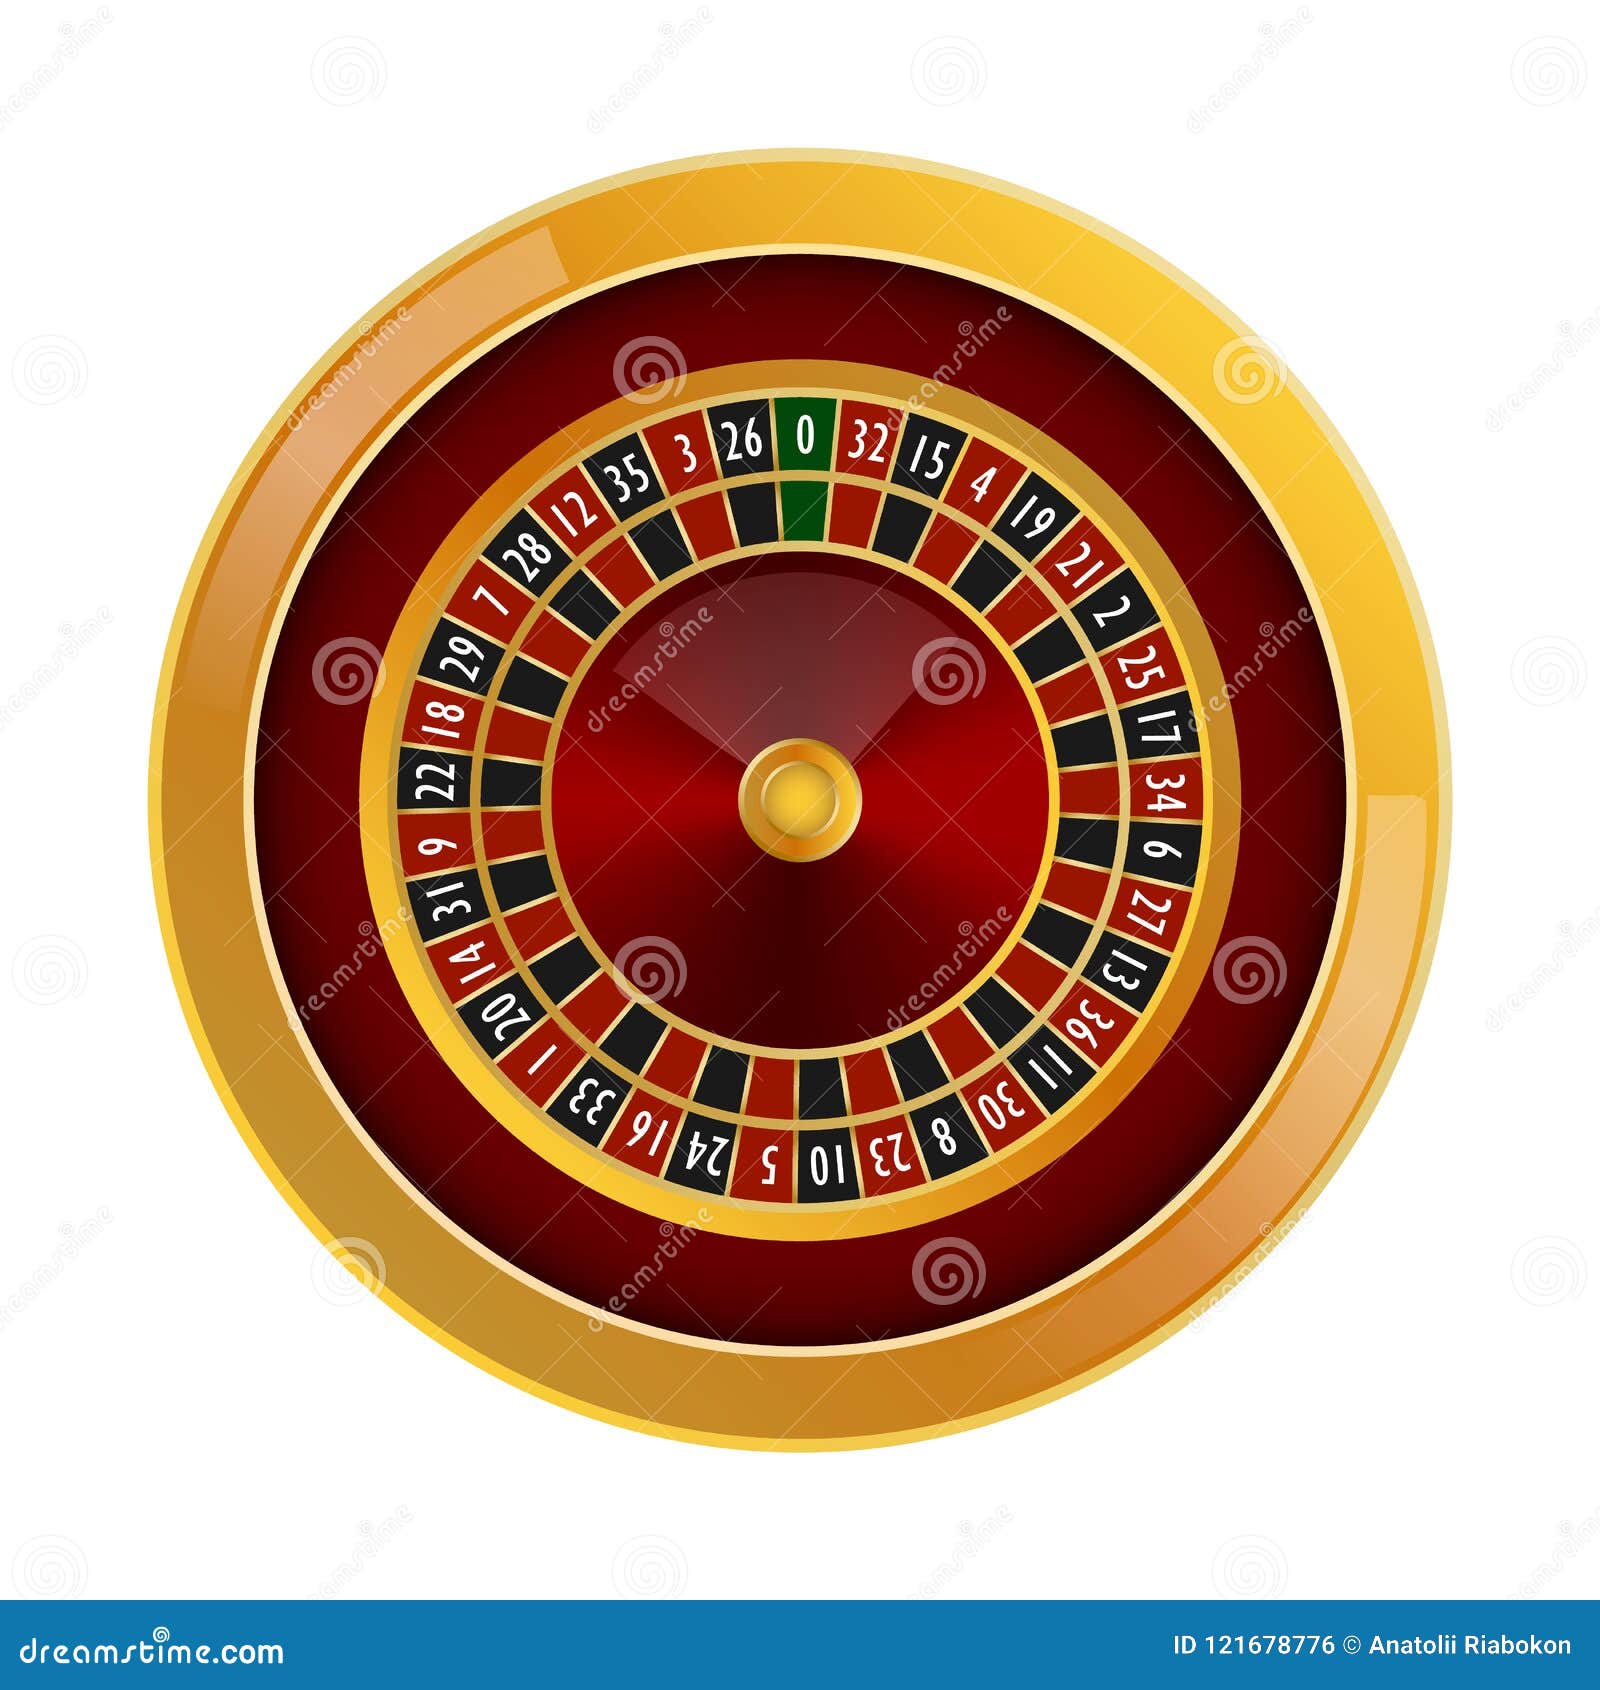 Ruleta de casino: Roulettist